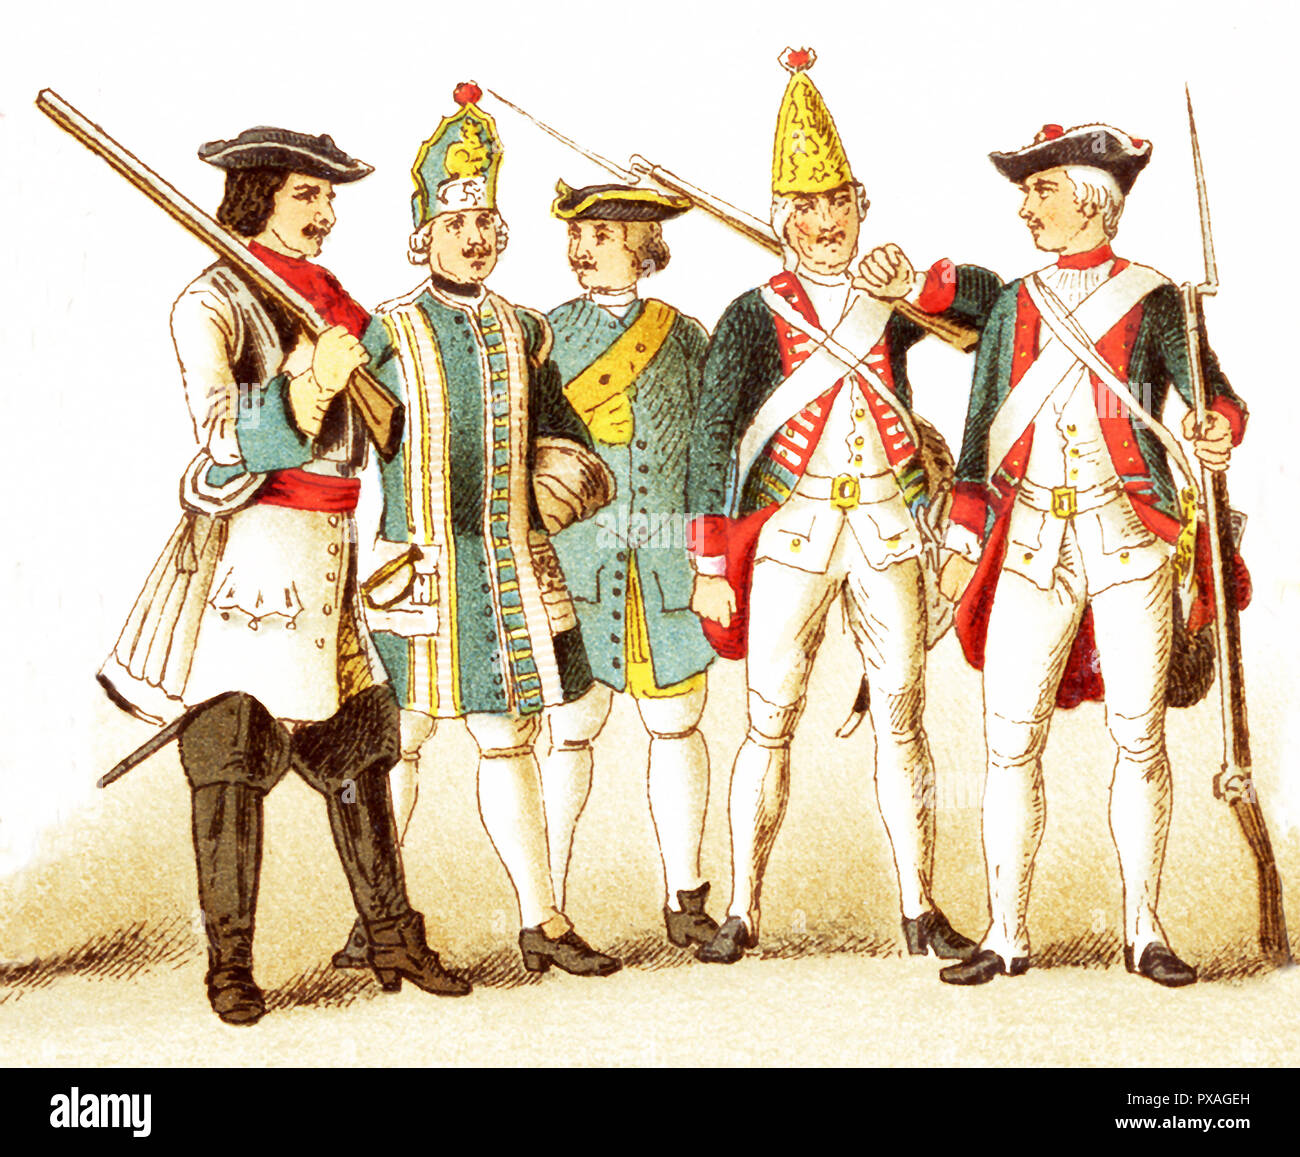 Les chiffres représentés ici sont allemands et prussiens et sont, de gauche à droite : un cuirassier de Brandebourg en 1700, un musicien de l'infanterie prussienne en 1704, un homme de l'artillerie prussienne en 1708, un grenadier prussien en 1756, et d'une infanterie prussienne en 1741 l'illustration dates à 1882. Banque D'Images